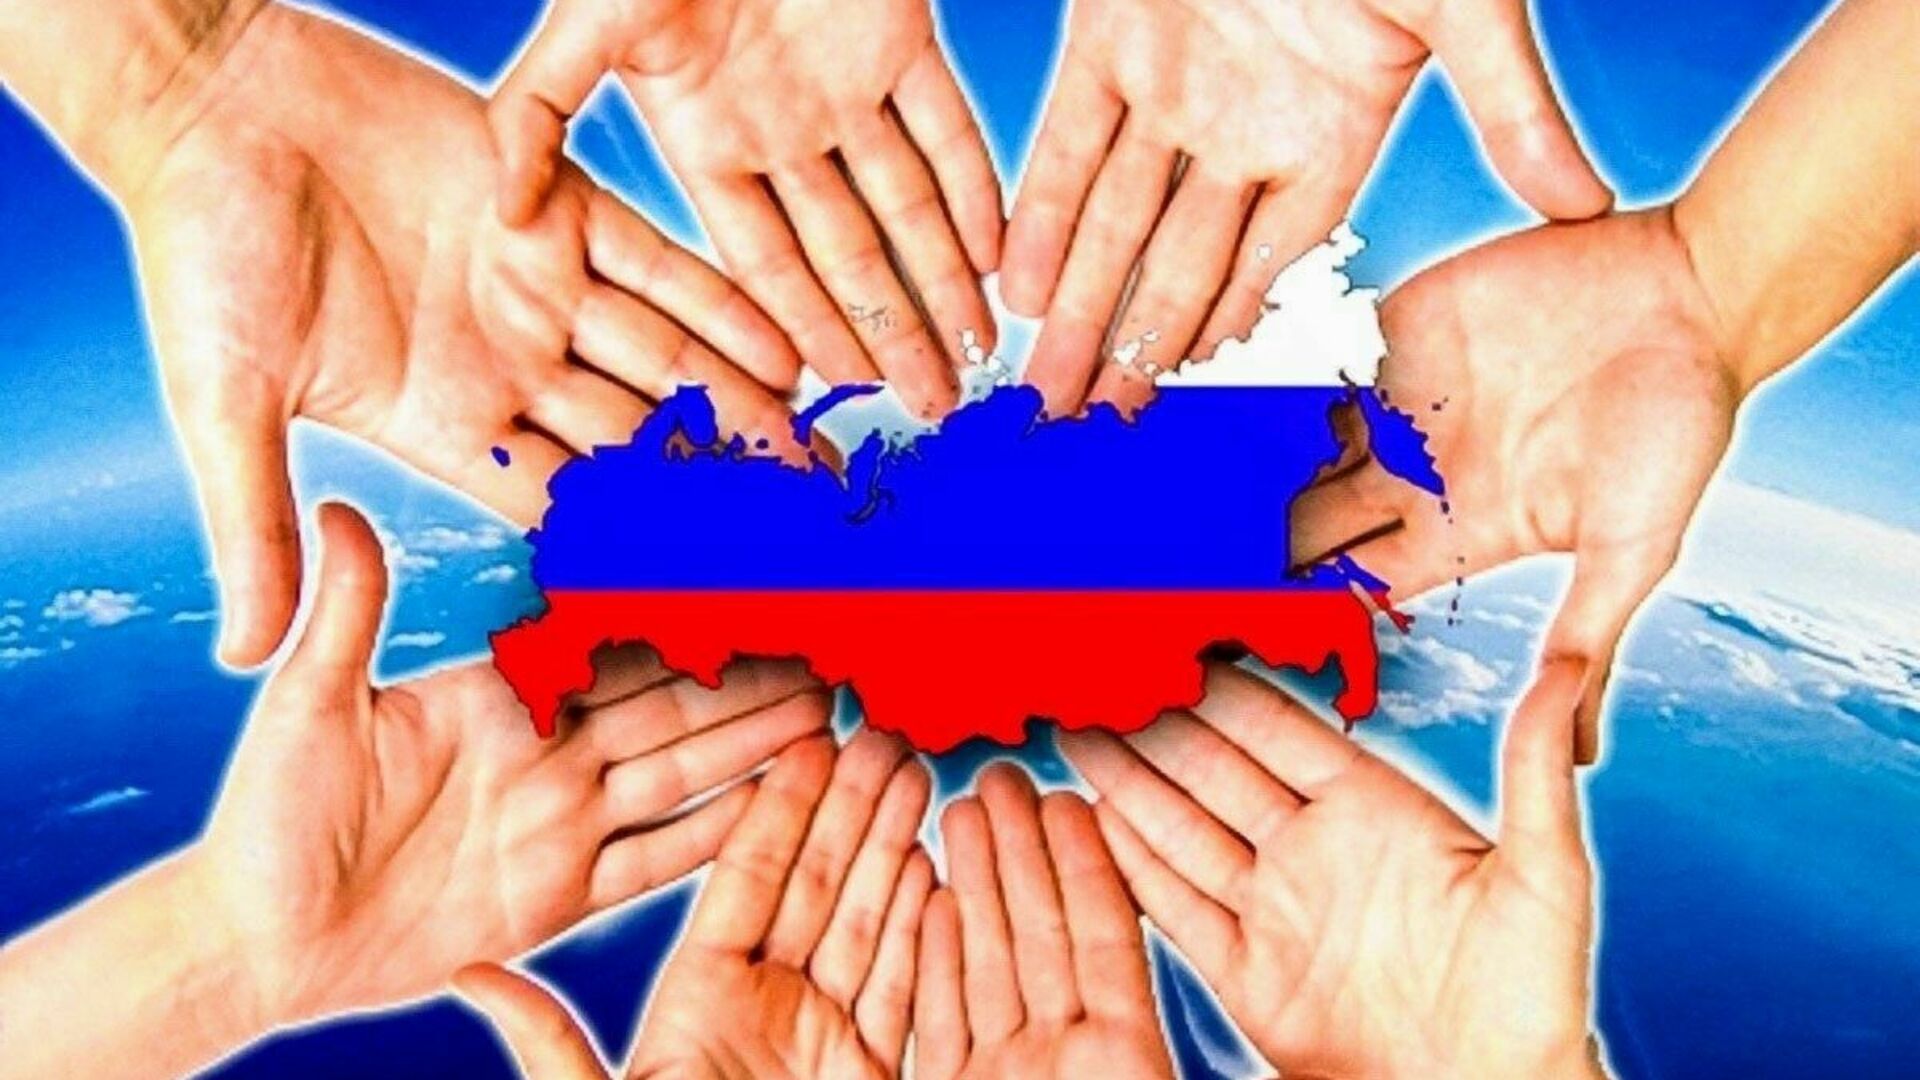 Сайт тема вместе. Единство народов России. В единстве наша сила. Единство картинки. Наша сила в единстве народов.